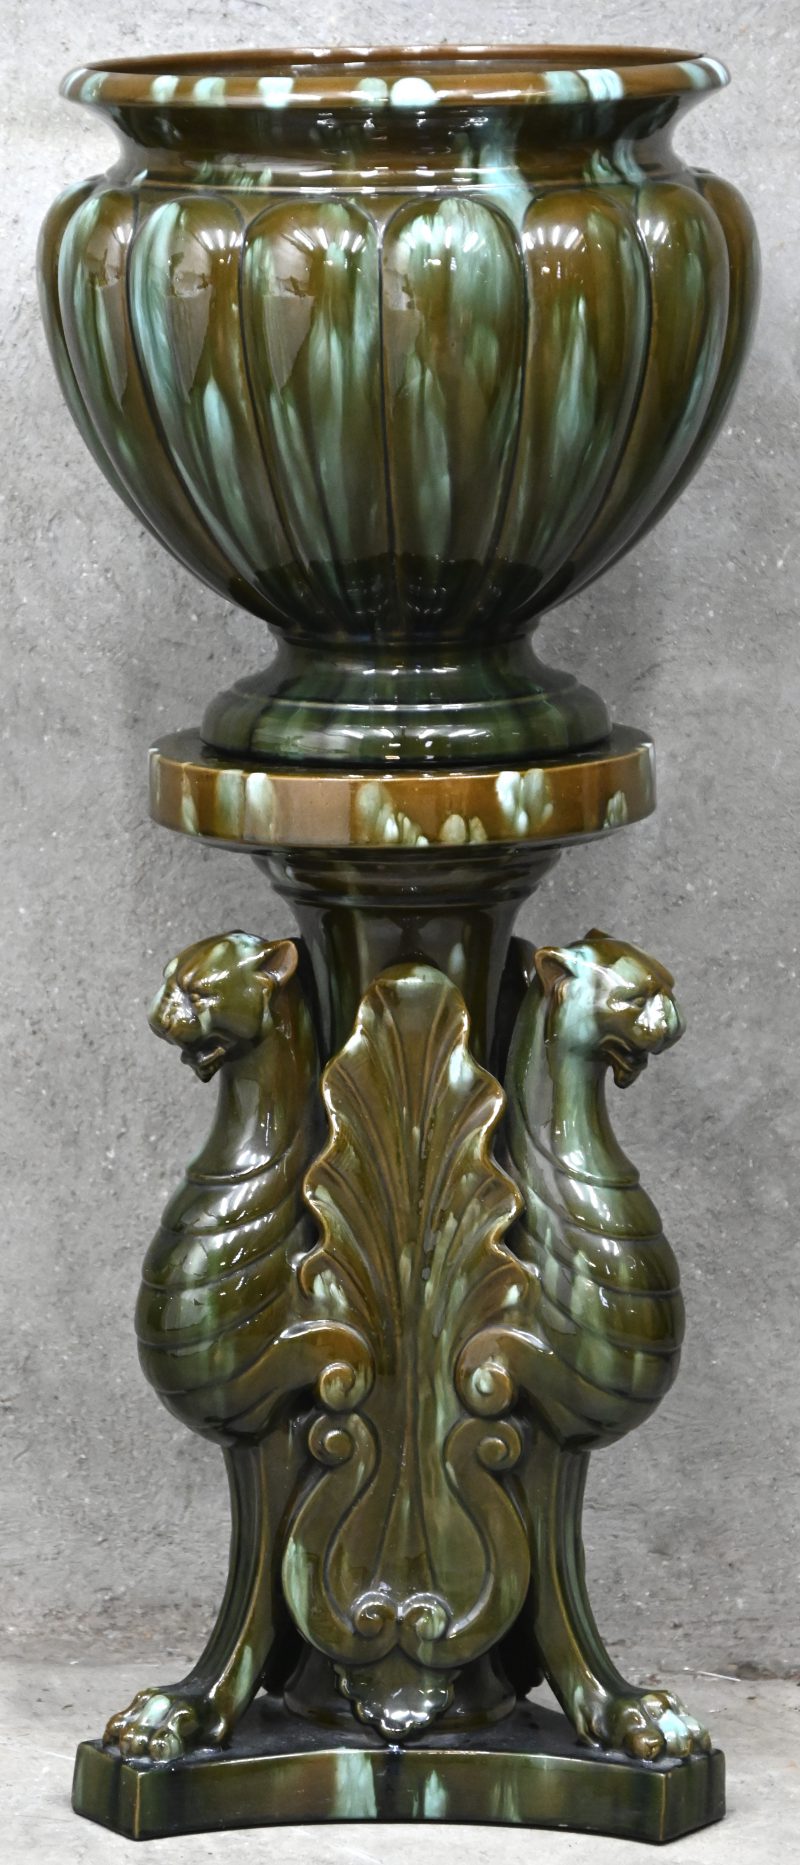 Cache-pot op zuil in keramiek, vroeg 20ste eeuws, onderaan de cache-pot gemerkt Clement Massier.